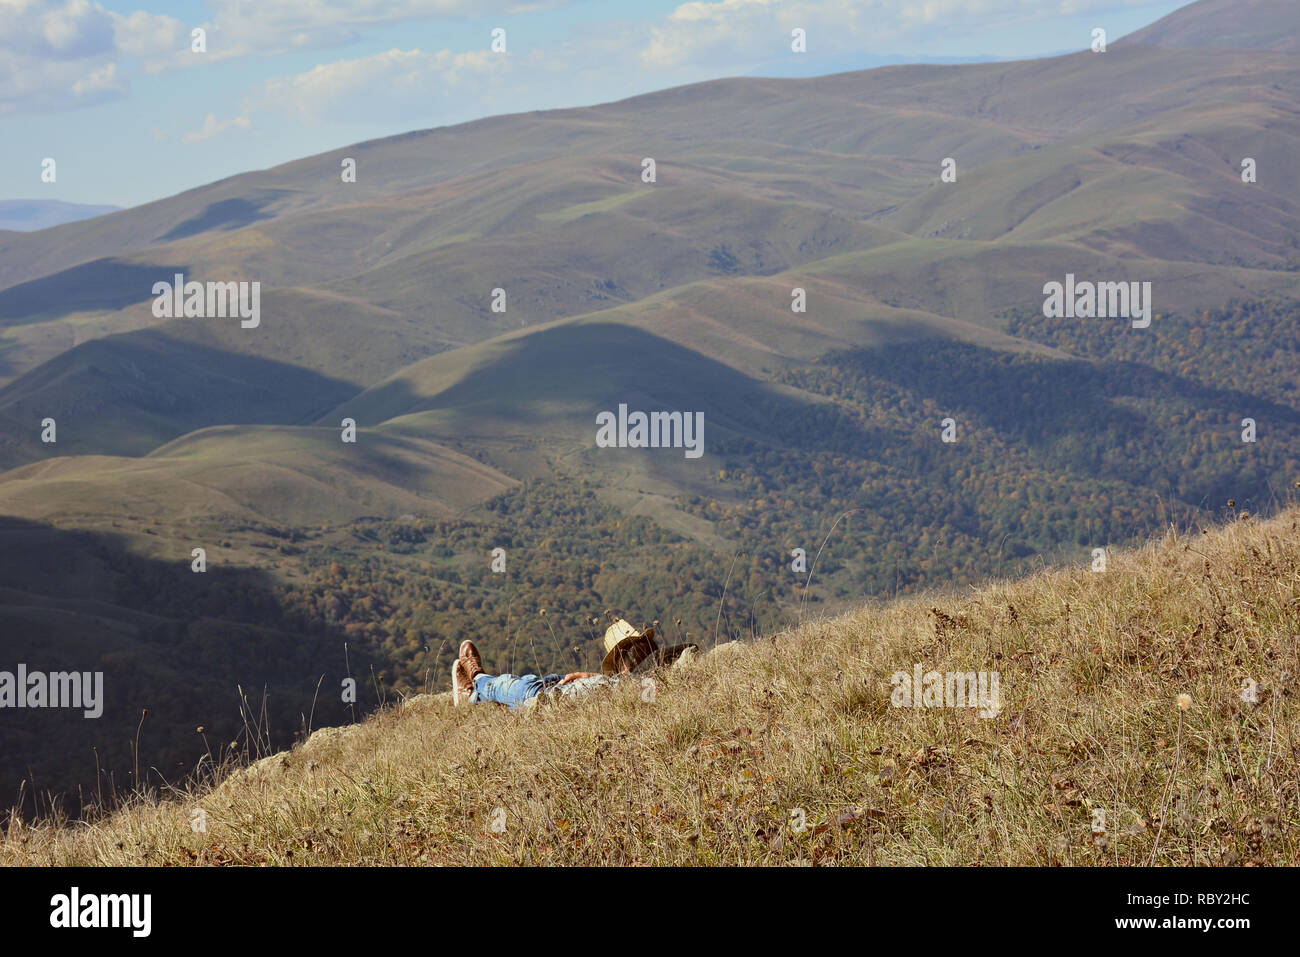 Giovane uomo in abiti da cowboy di riposo in montagna.Traveler godendo di una vista panoramica durante l'escursione, bello sfondo con paesaggio di montagna. Foto Stock